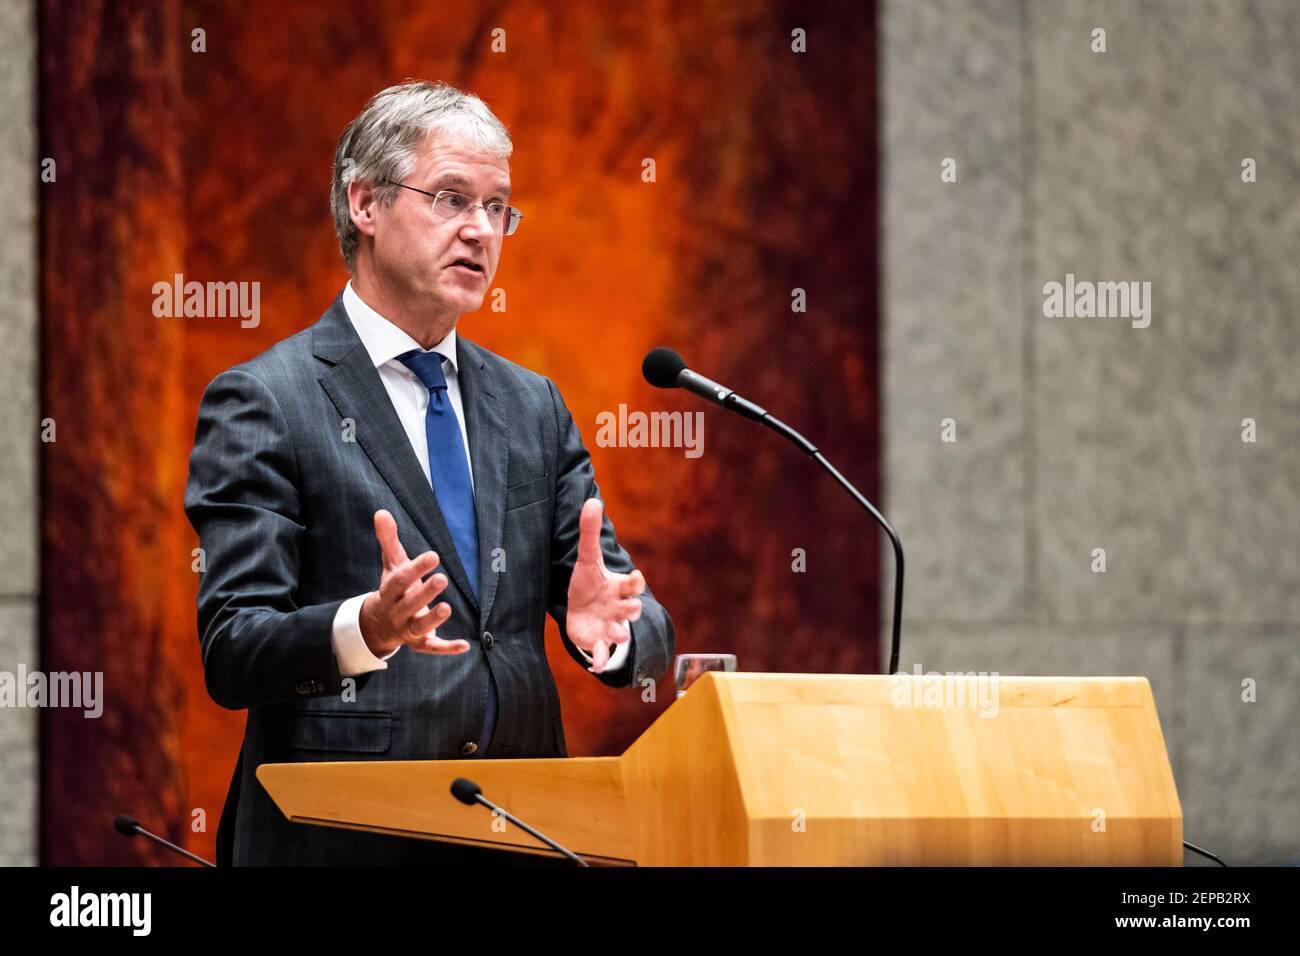 DEN HAAG, 26-11-2019, Question Hour in the Dutch parliament. Minister voor Basis en Voortgezet Onderwijs en Media Arie Slob (Photo by Pro Shots/Sipa USA) Stock Photo